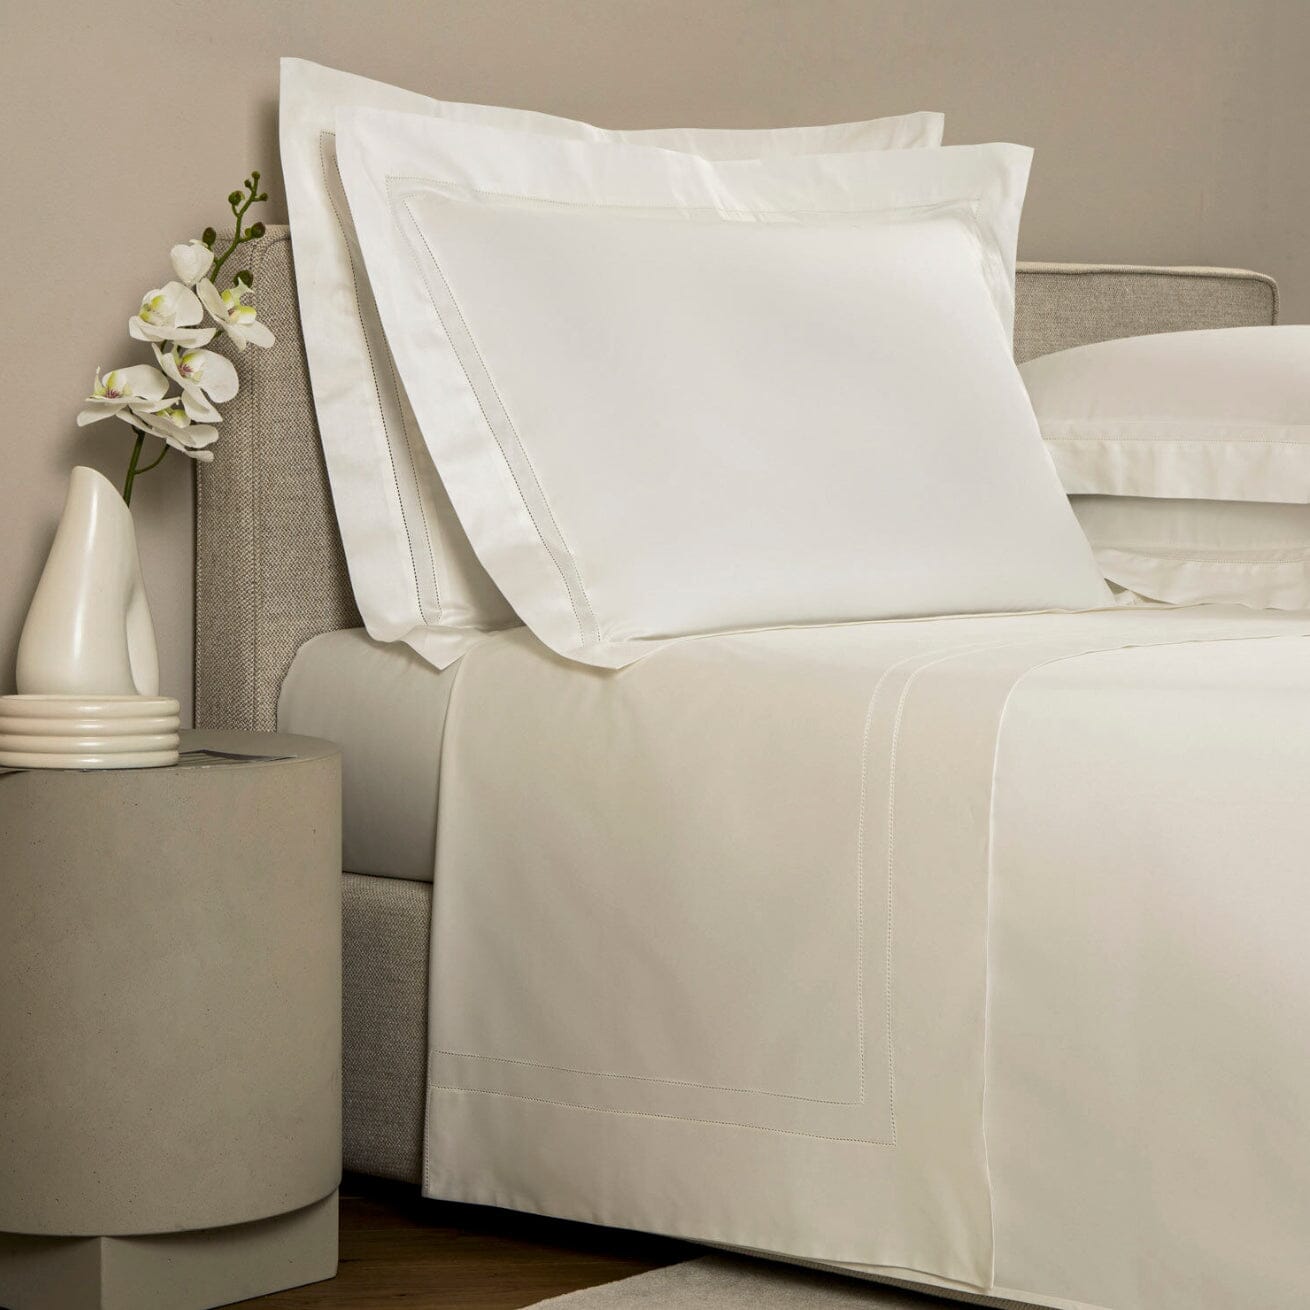 Frette - Luxurious Doppio Ajour Bed sheet set in Milk - Frette Fine Linens Bedding